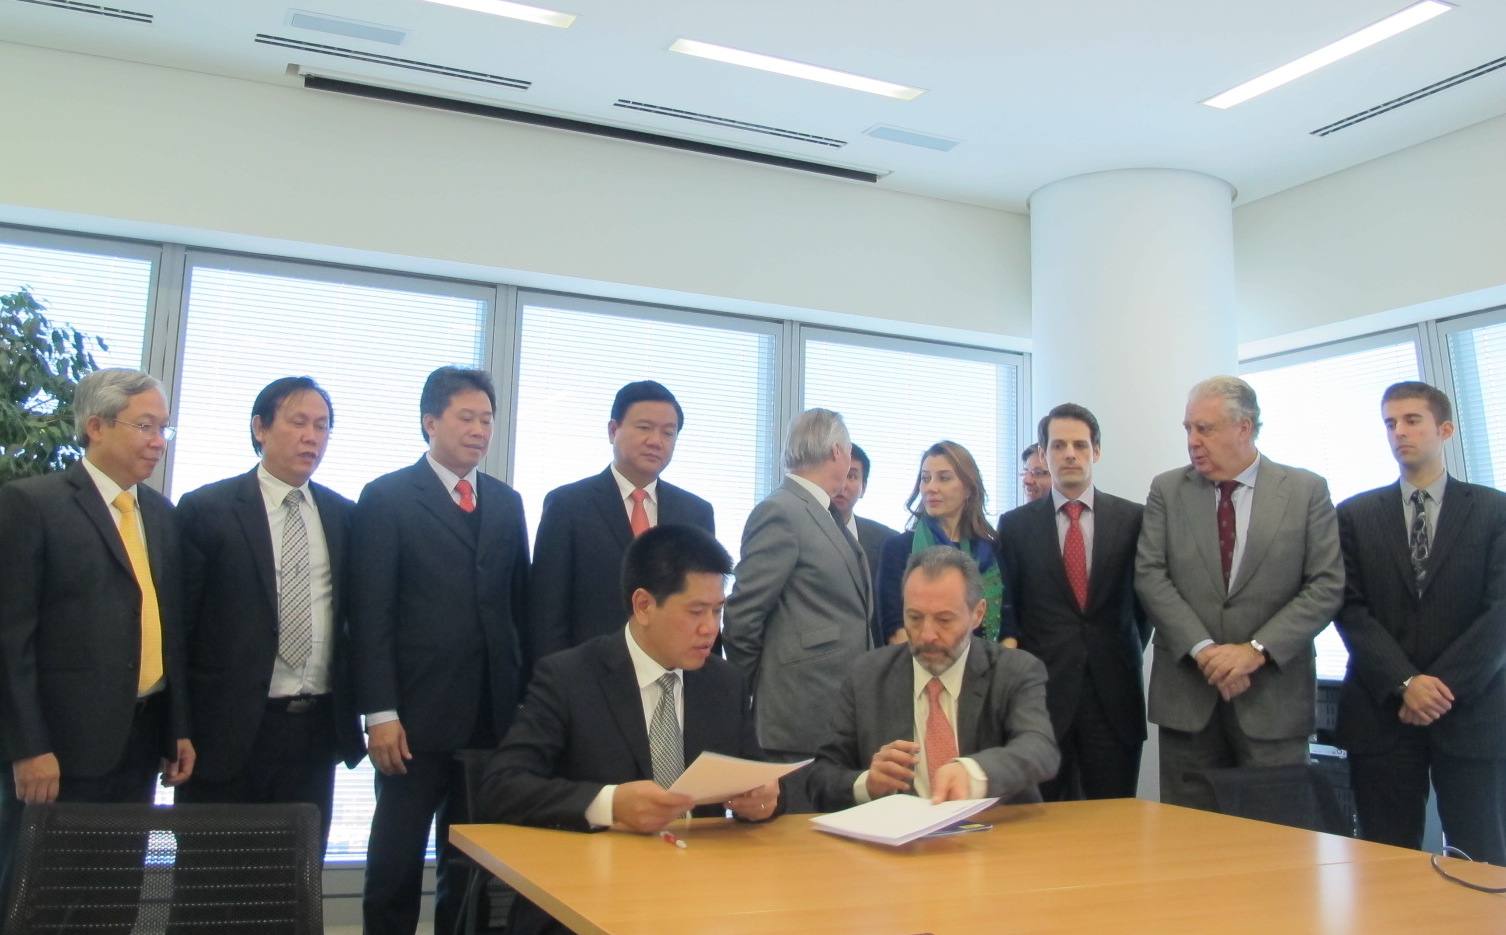 Tổng công ty Thăng Long ký thoả thuận hợp tác với tập đoàn OHL - một trong những tập đoàn lớn nhất Tây Ban Nha về đầu tư hạ tầng 